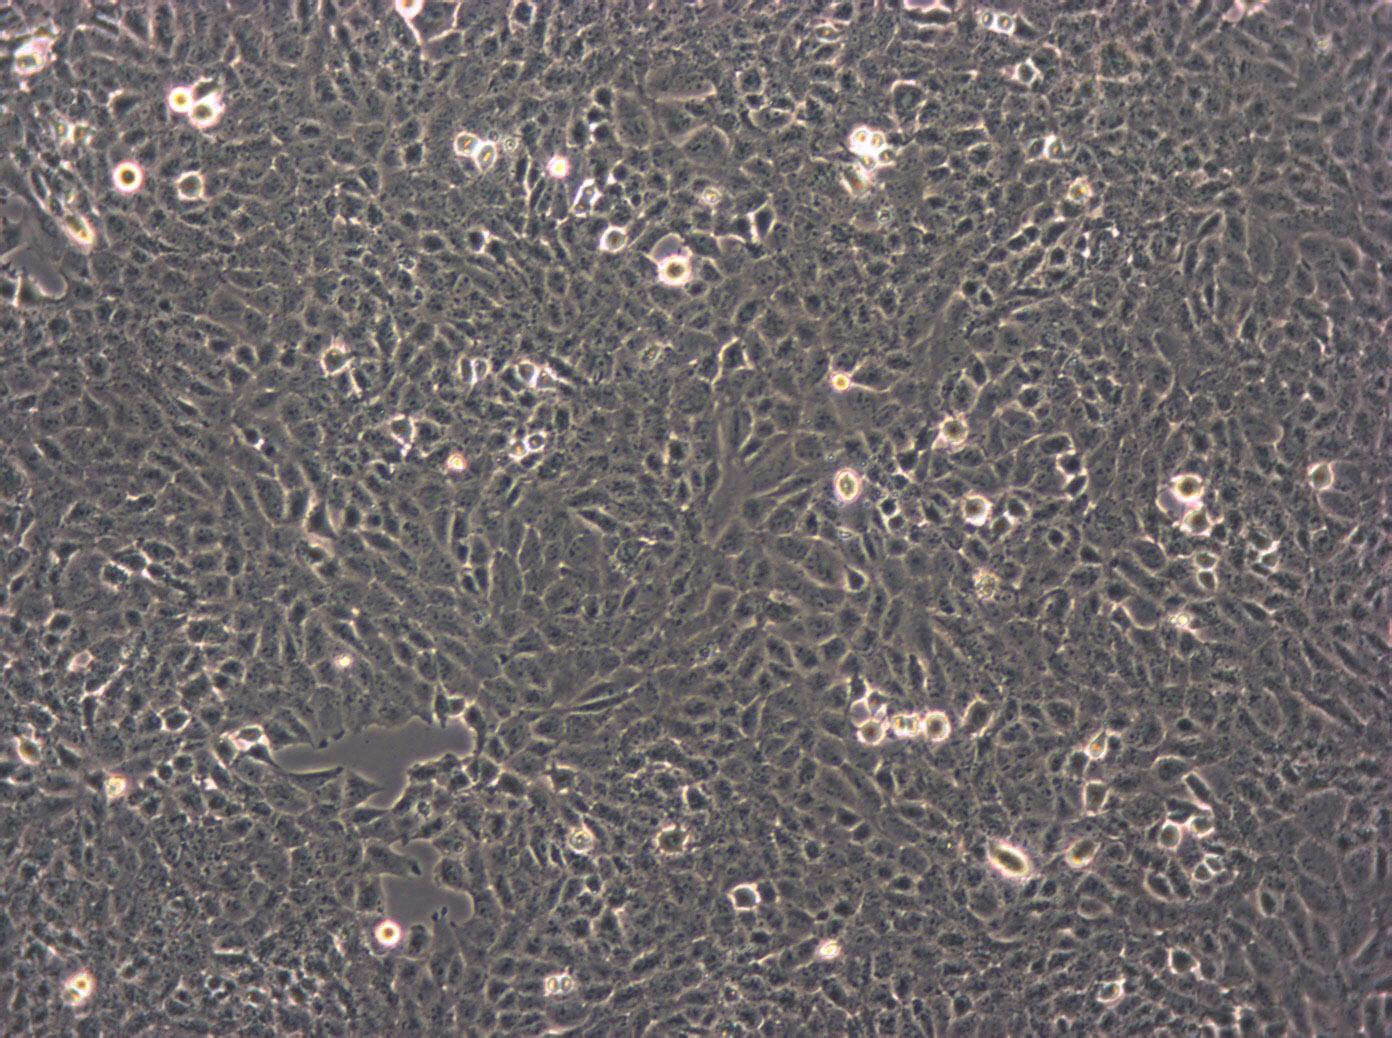 SH-SY5Y Cells|人神经母细胞瘤需消化细胞系